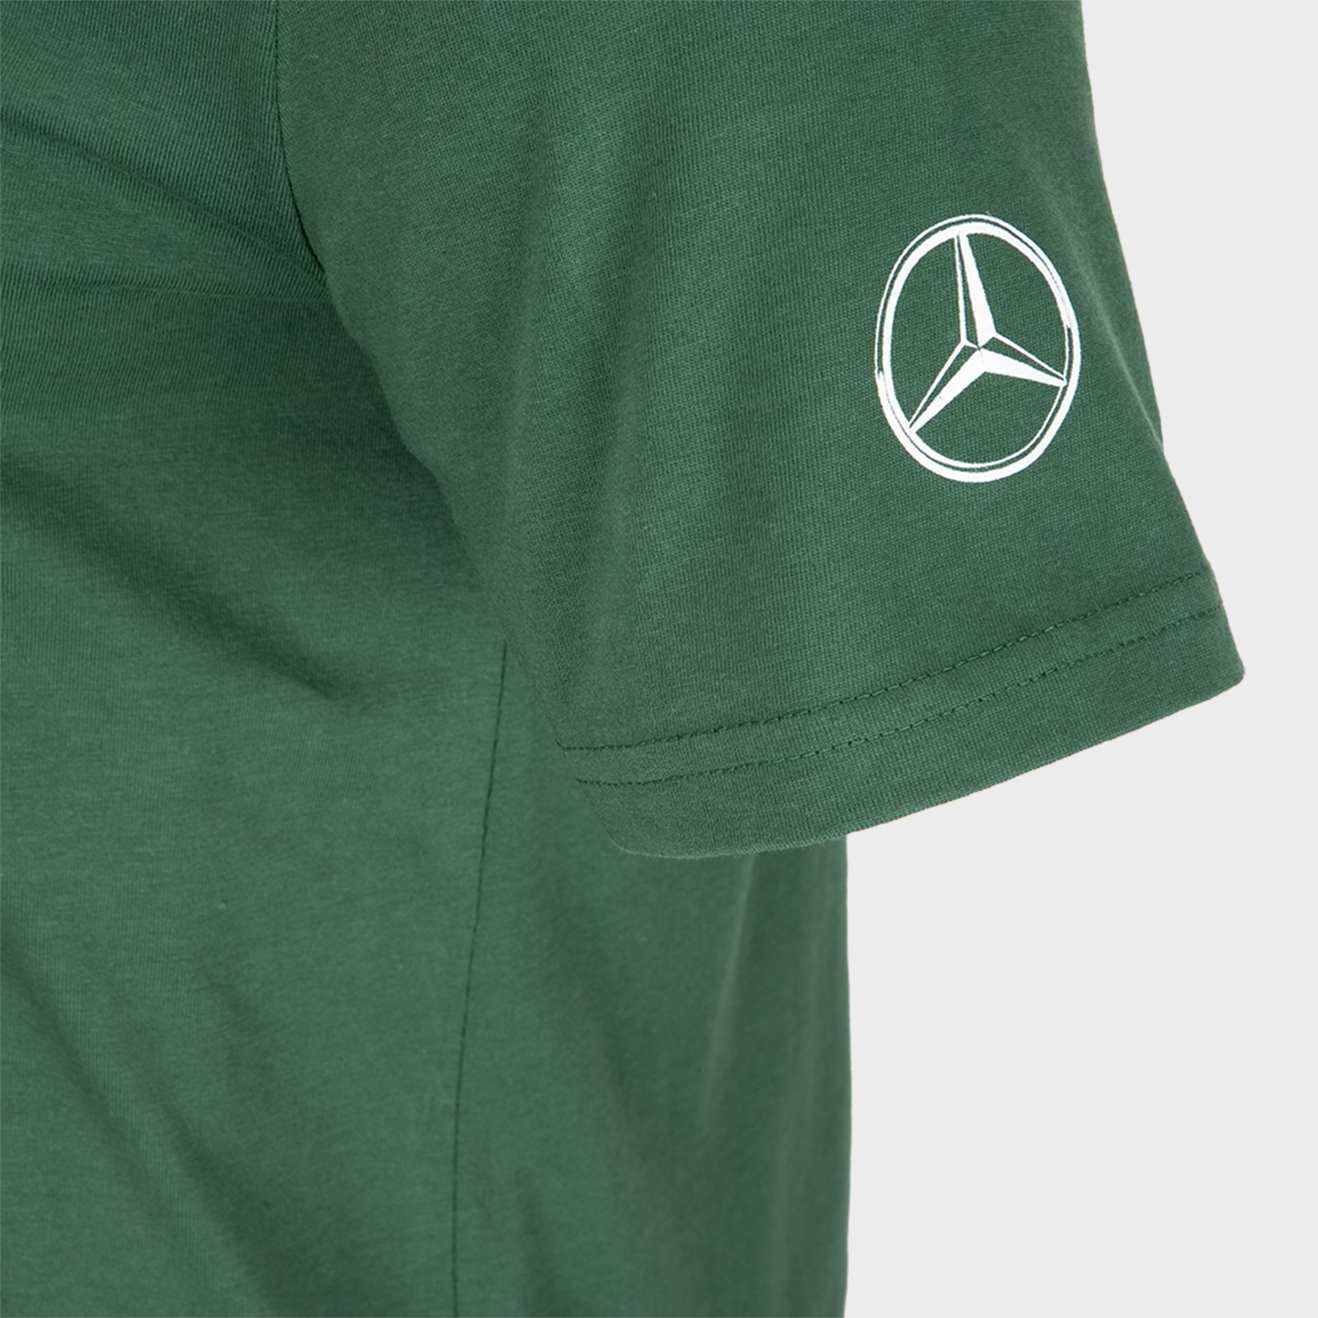 T-shirt homme Mercedes-Benz Trucks, logo Actros dans le dos